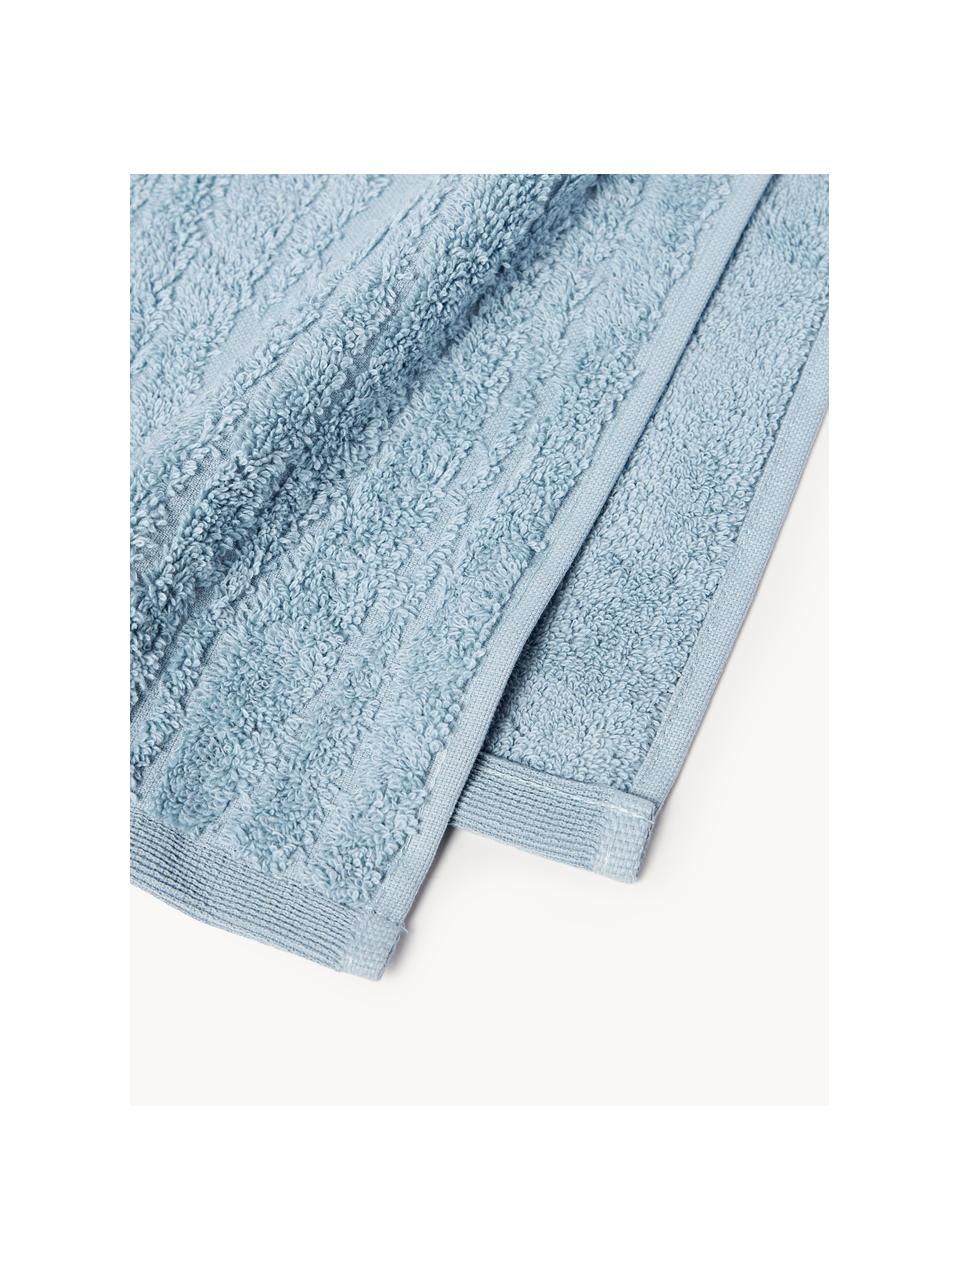 Baumwoll-Handtuch Audrina, in verschiedenen Grössen, Graublau, Handtuch, B 50 x L 100 cm, 2 Stück